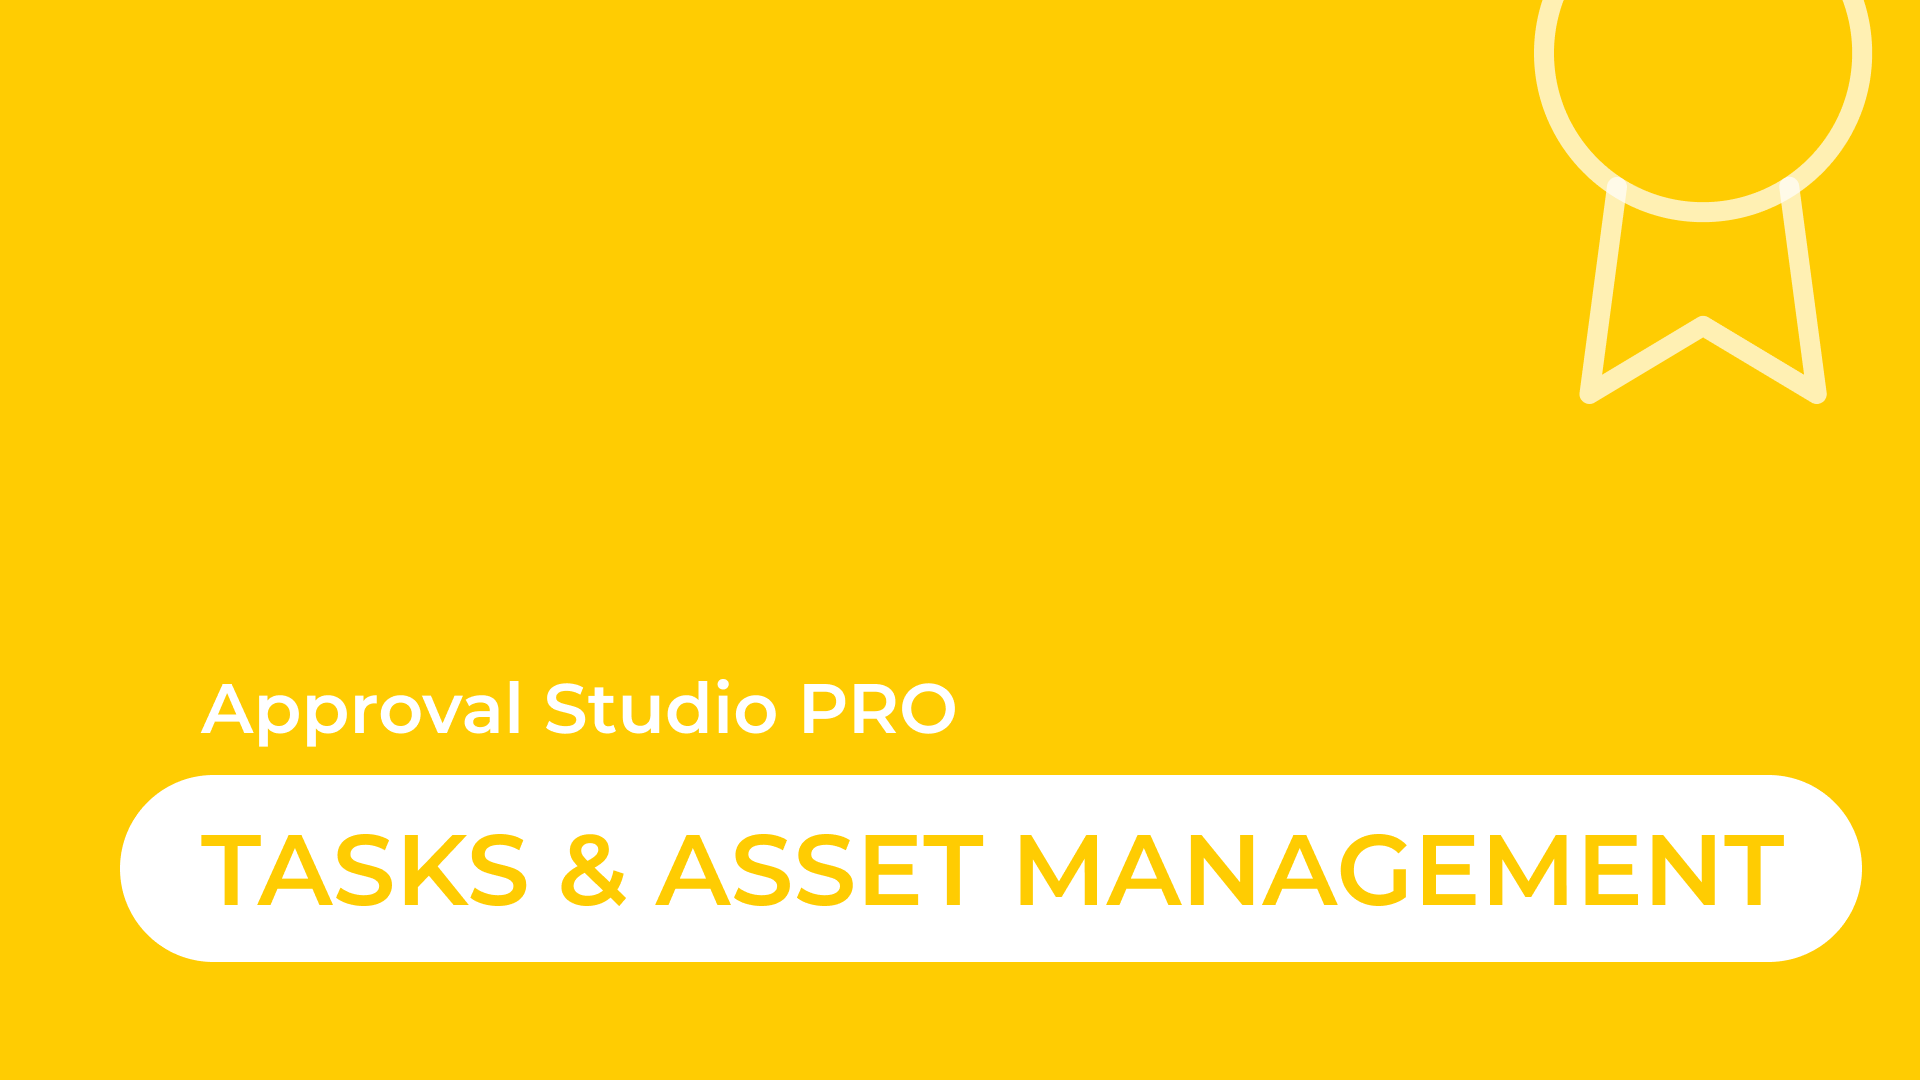 Tasks and Asset Management